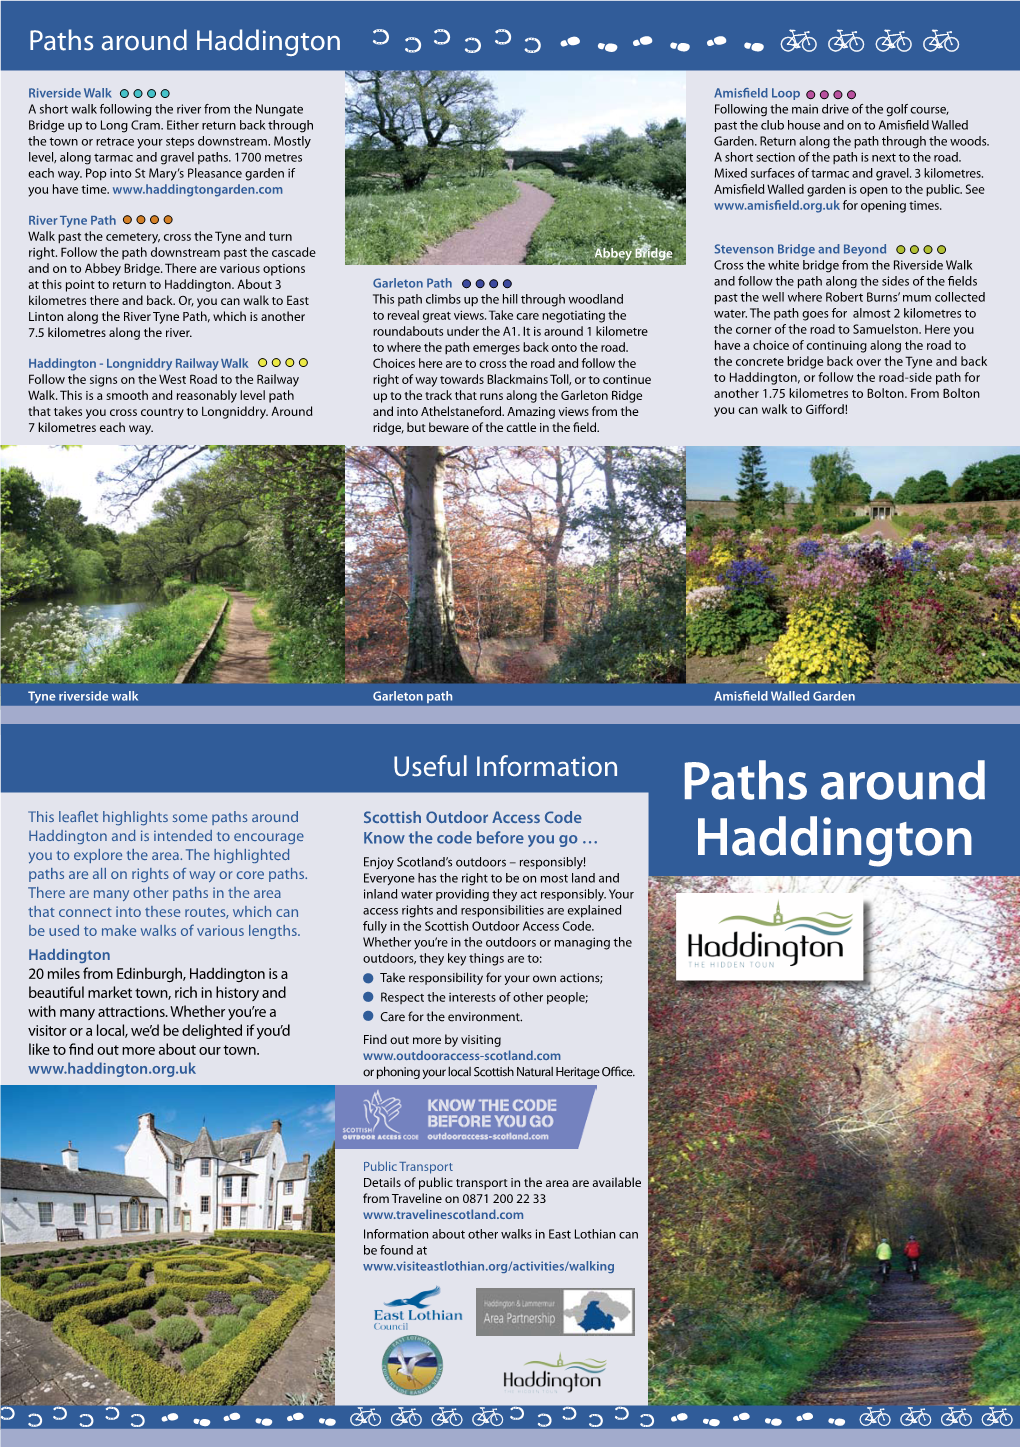 Paths Around Haddington